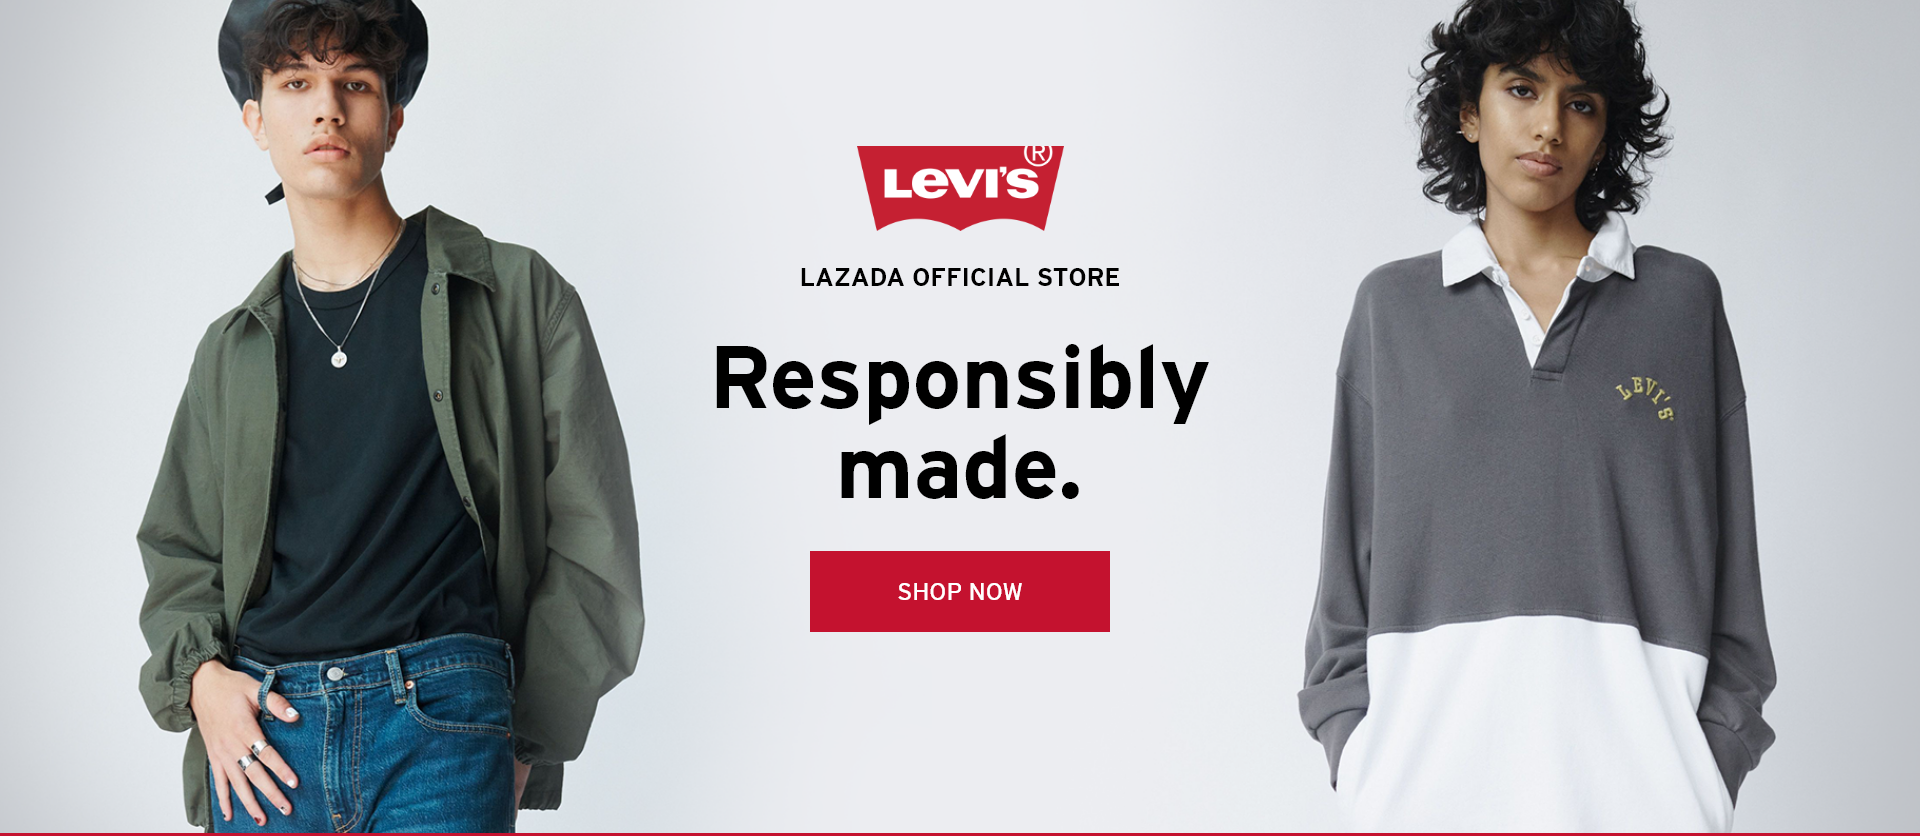 Shop at Levi's | lazada.com.ph